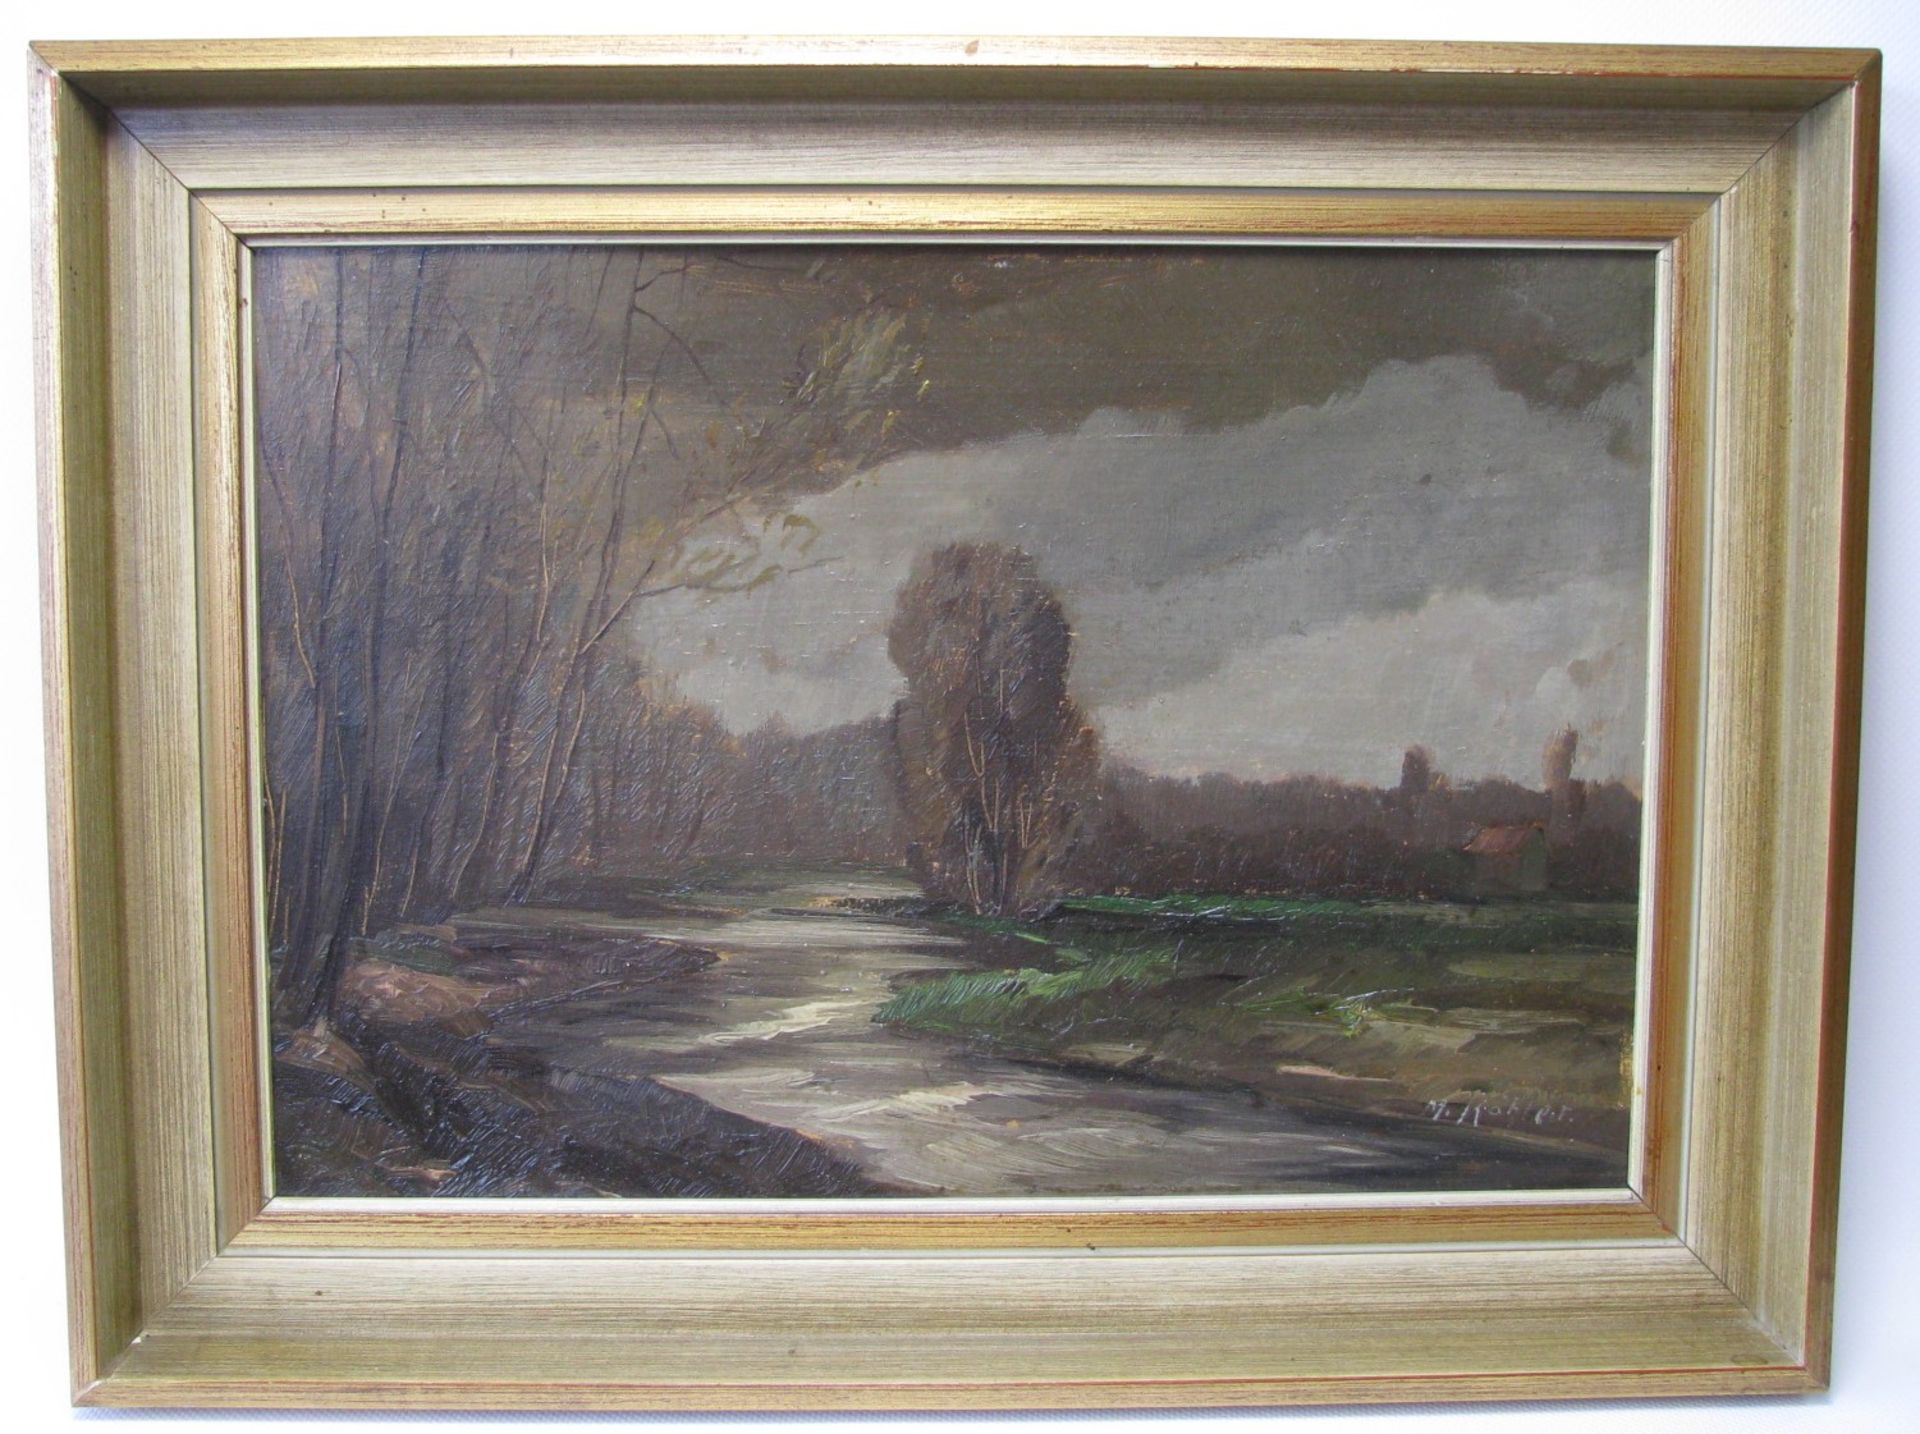 Köhler, M., "Flusslandschaft im Gewitter", re.u.sign., Öl/Malerpappe, 25 x 35,5 cm, R.